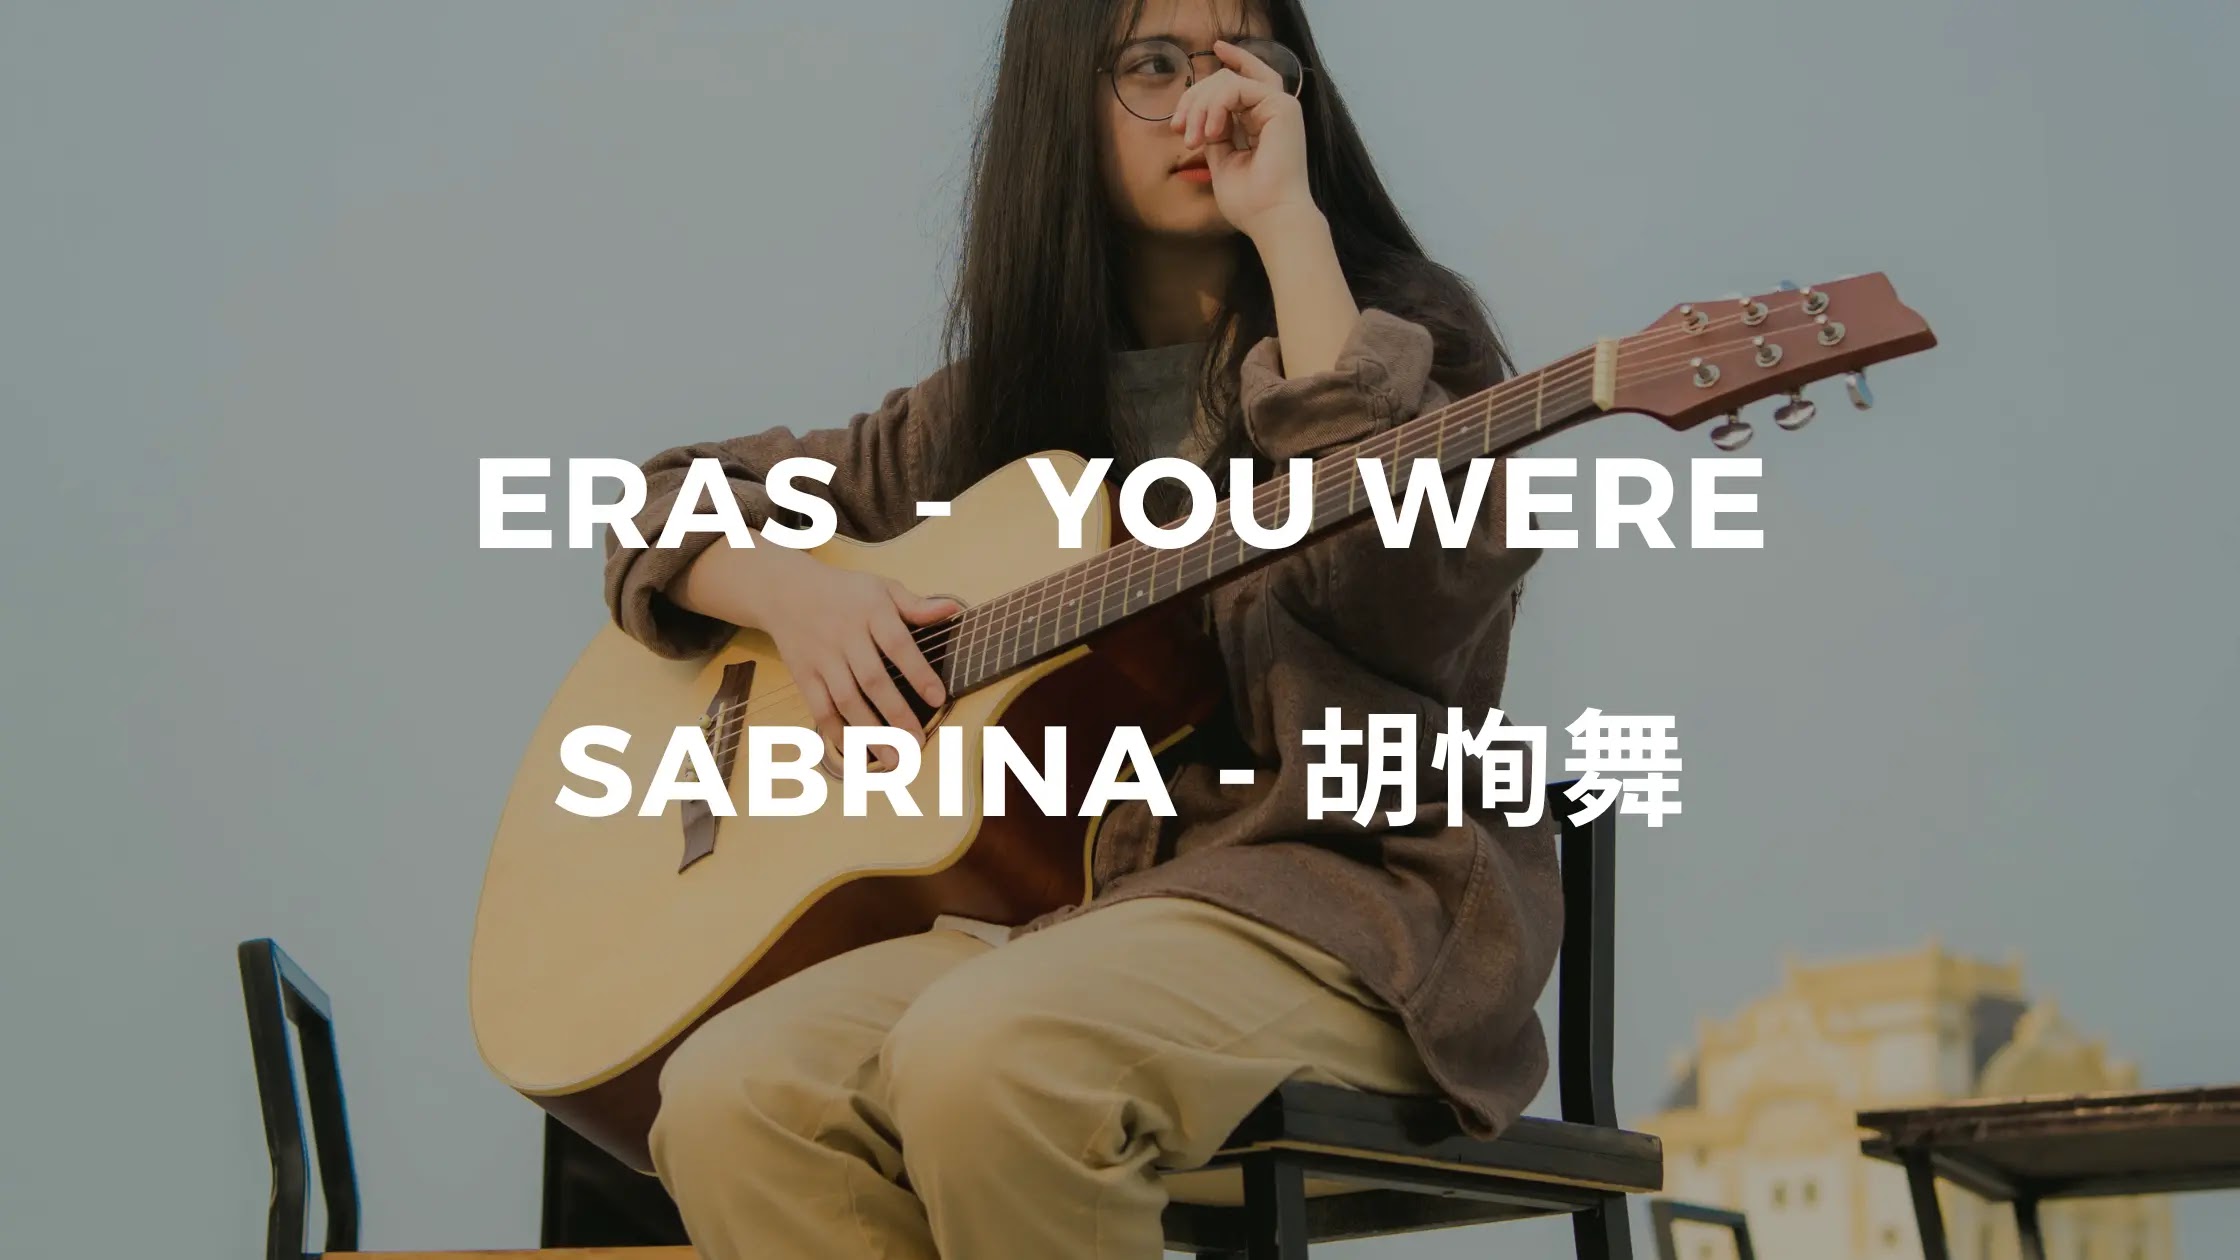 Sabrina - Tú eras